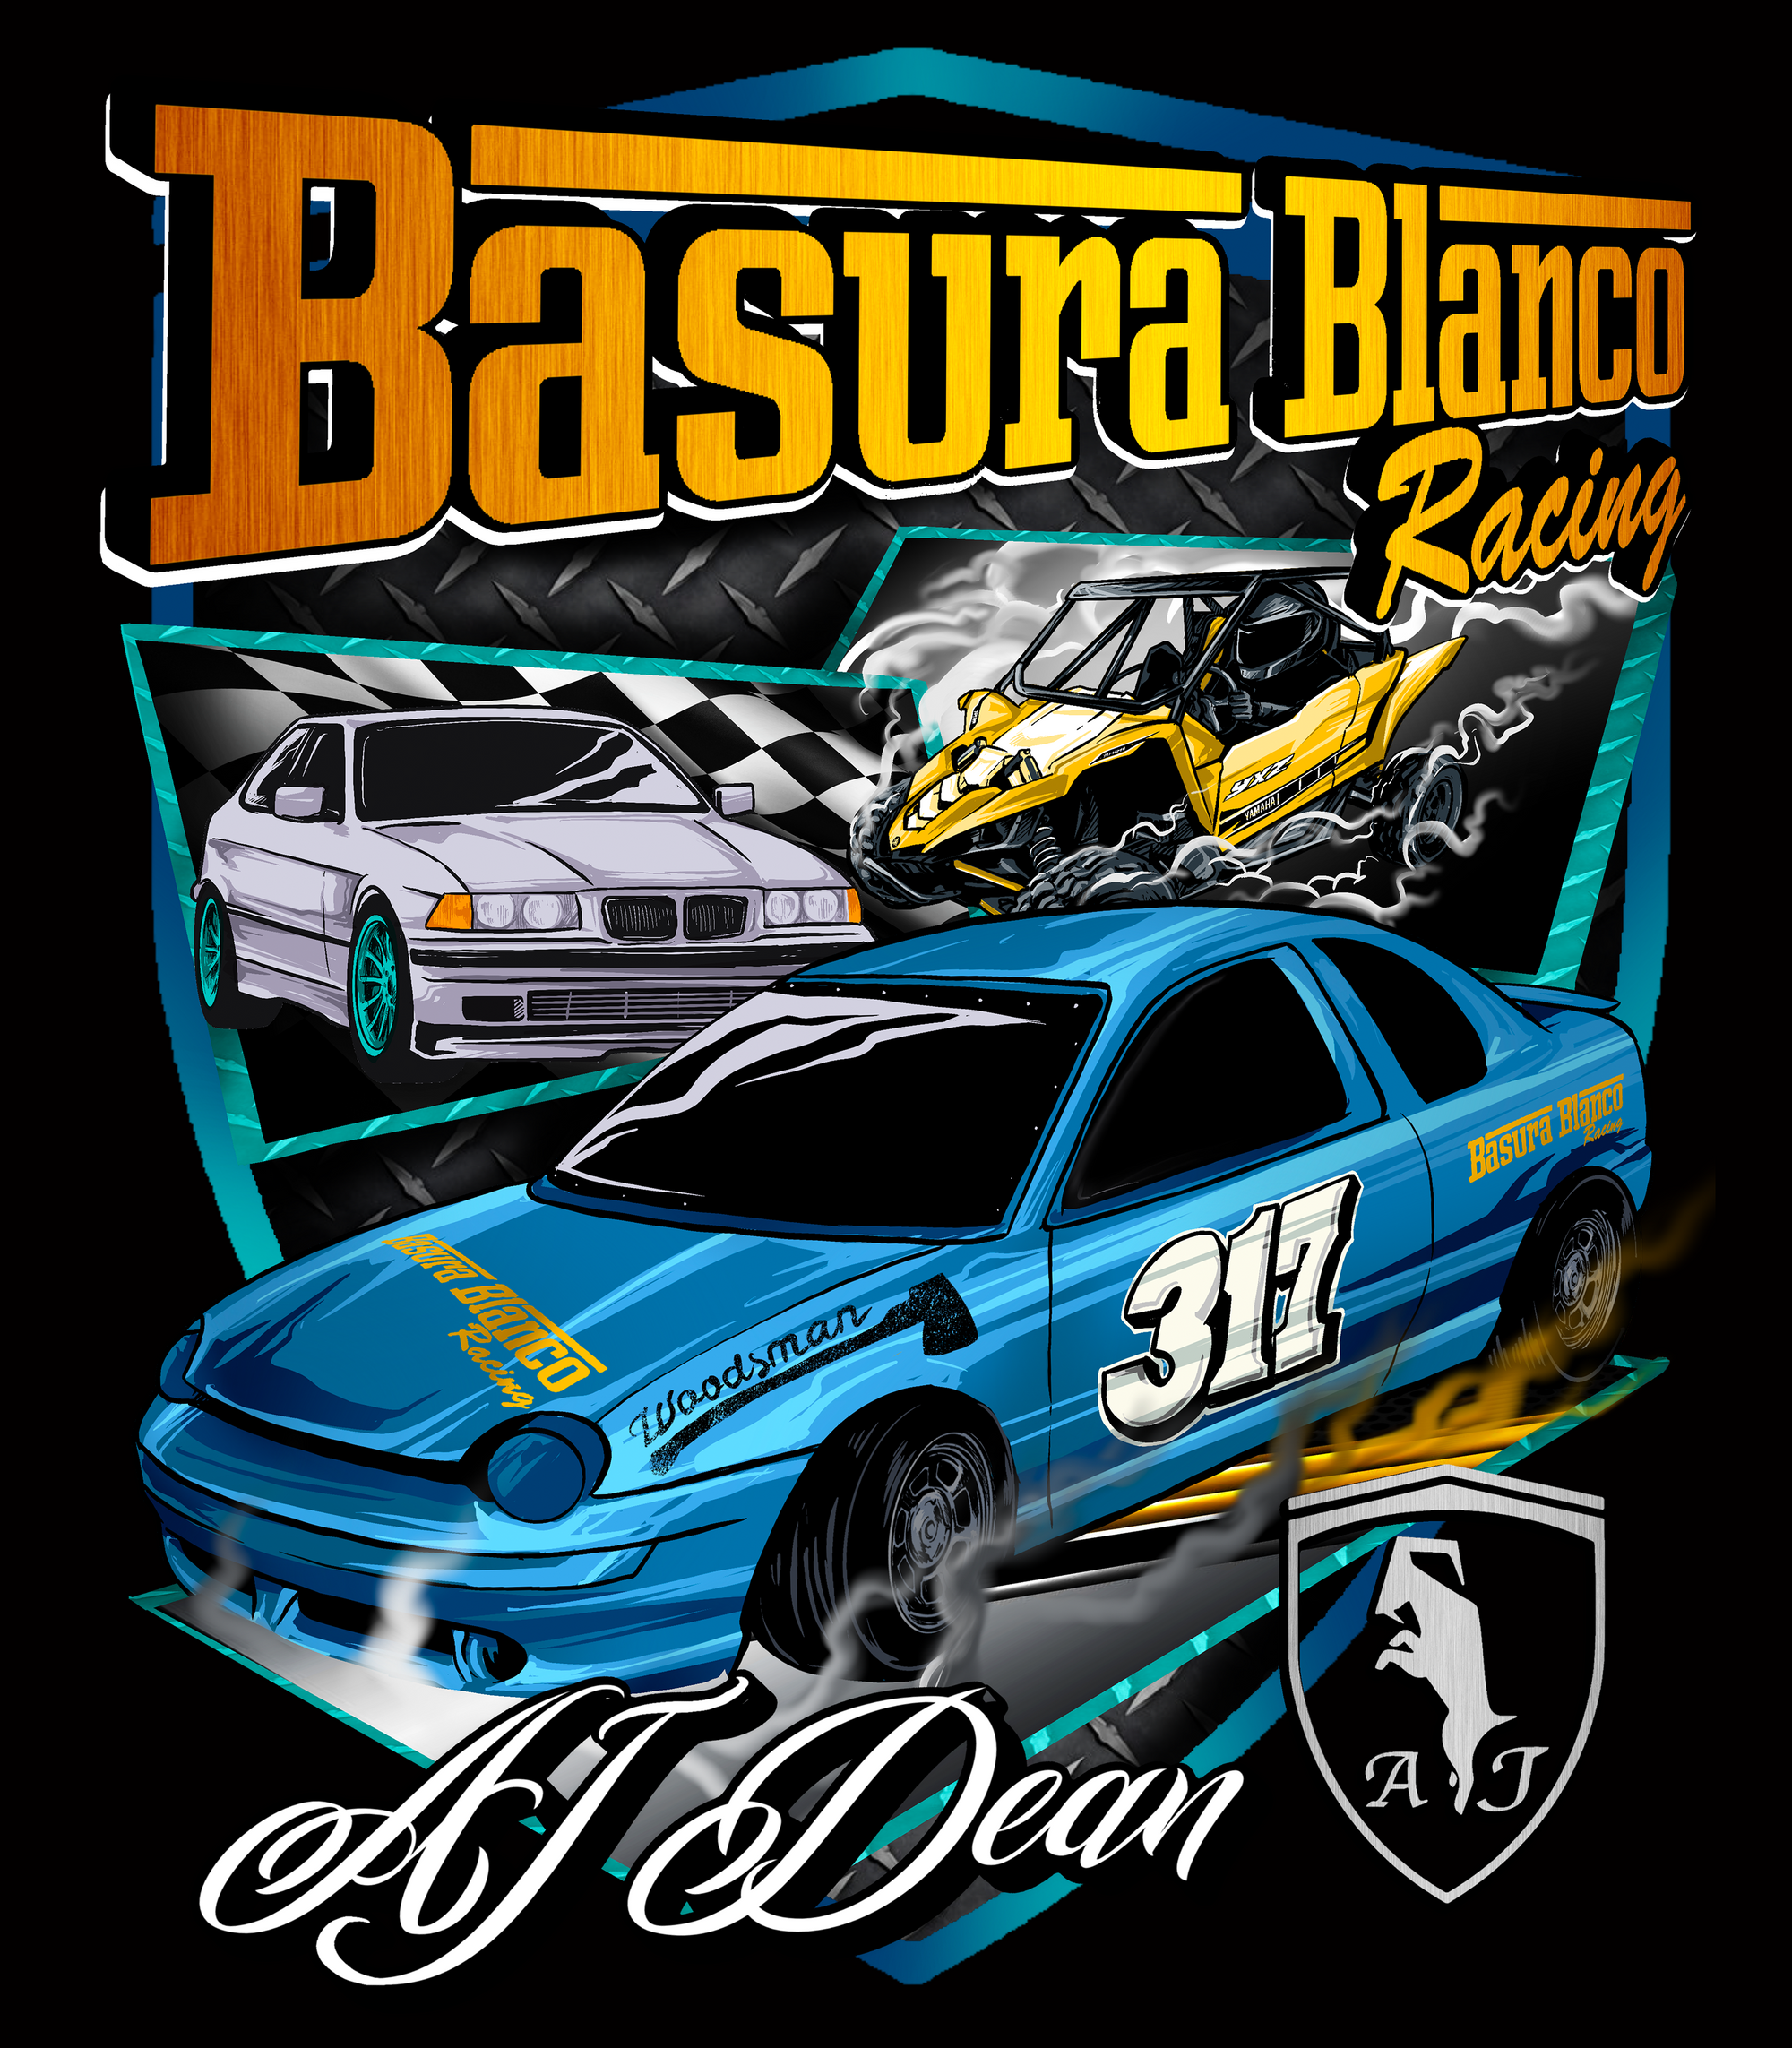 Basura Blanco Racing